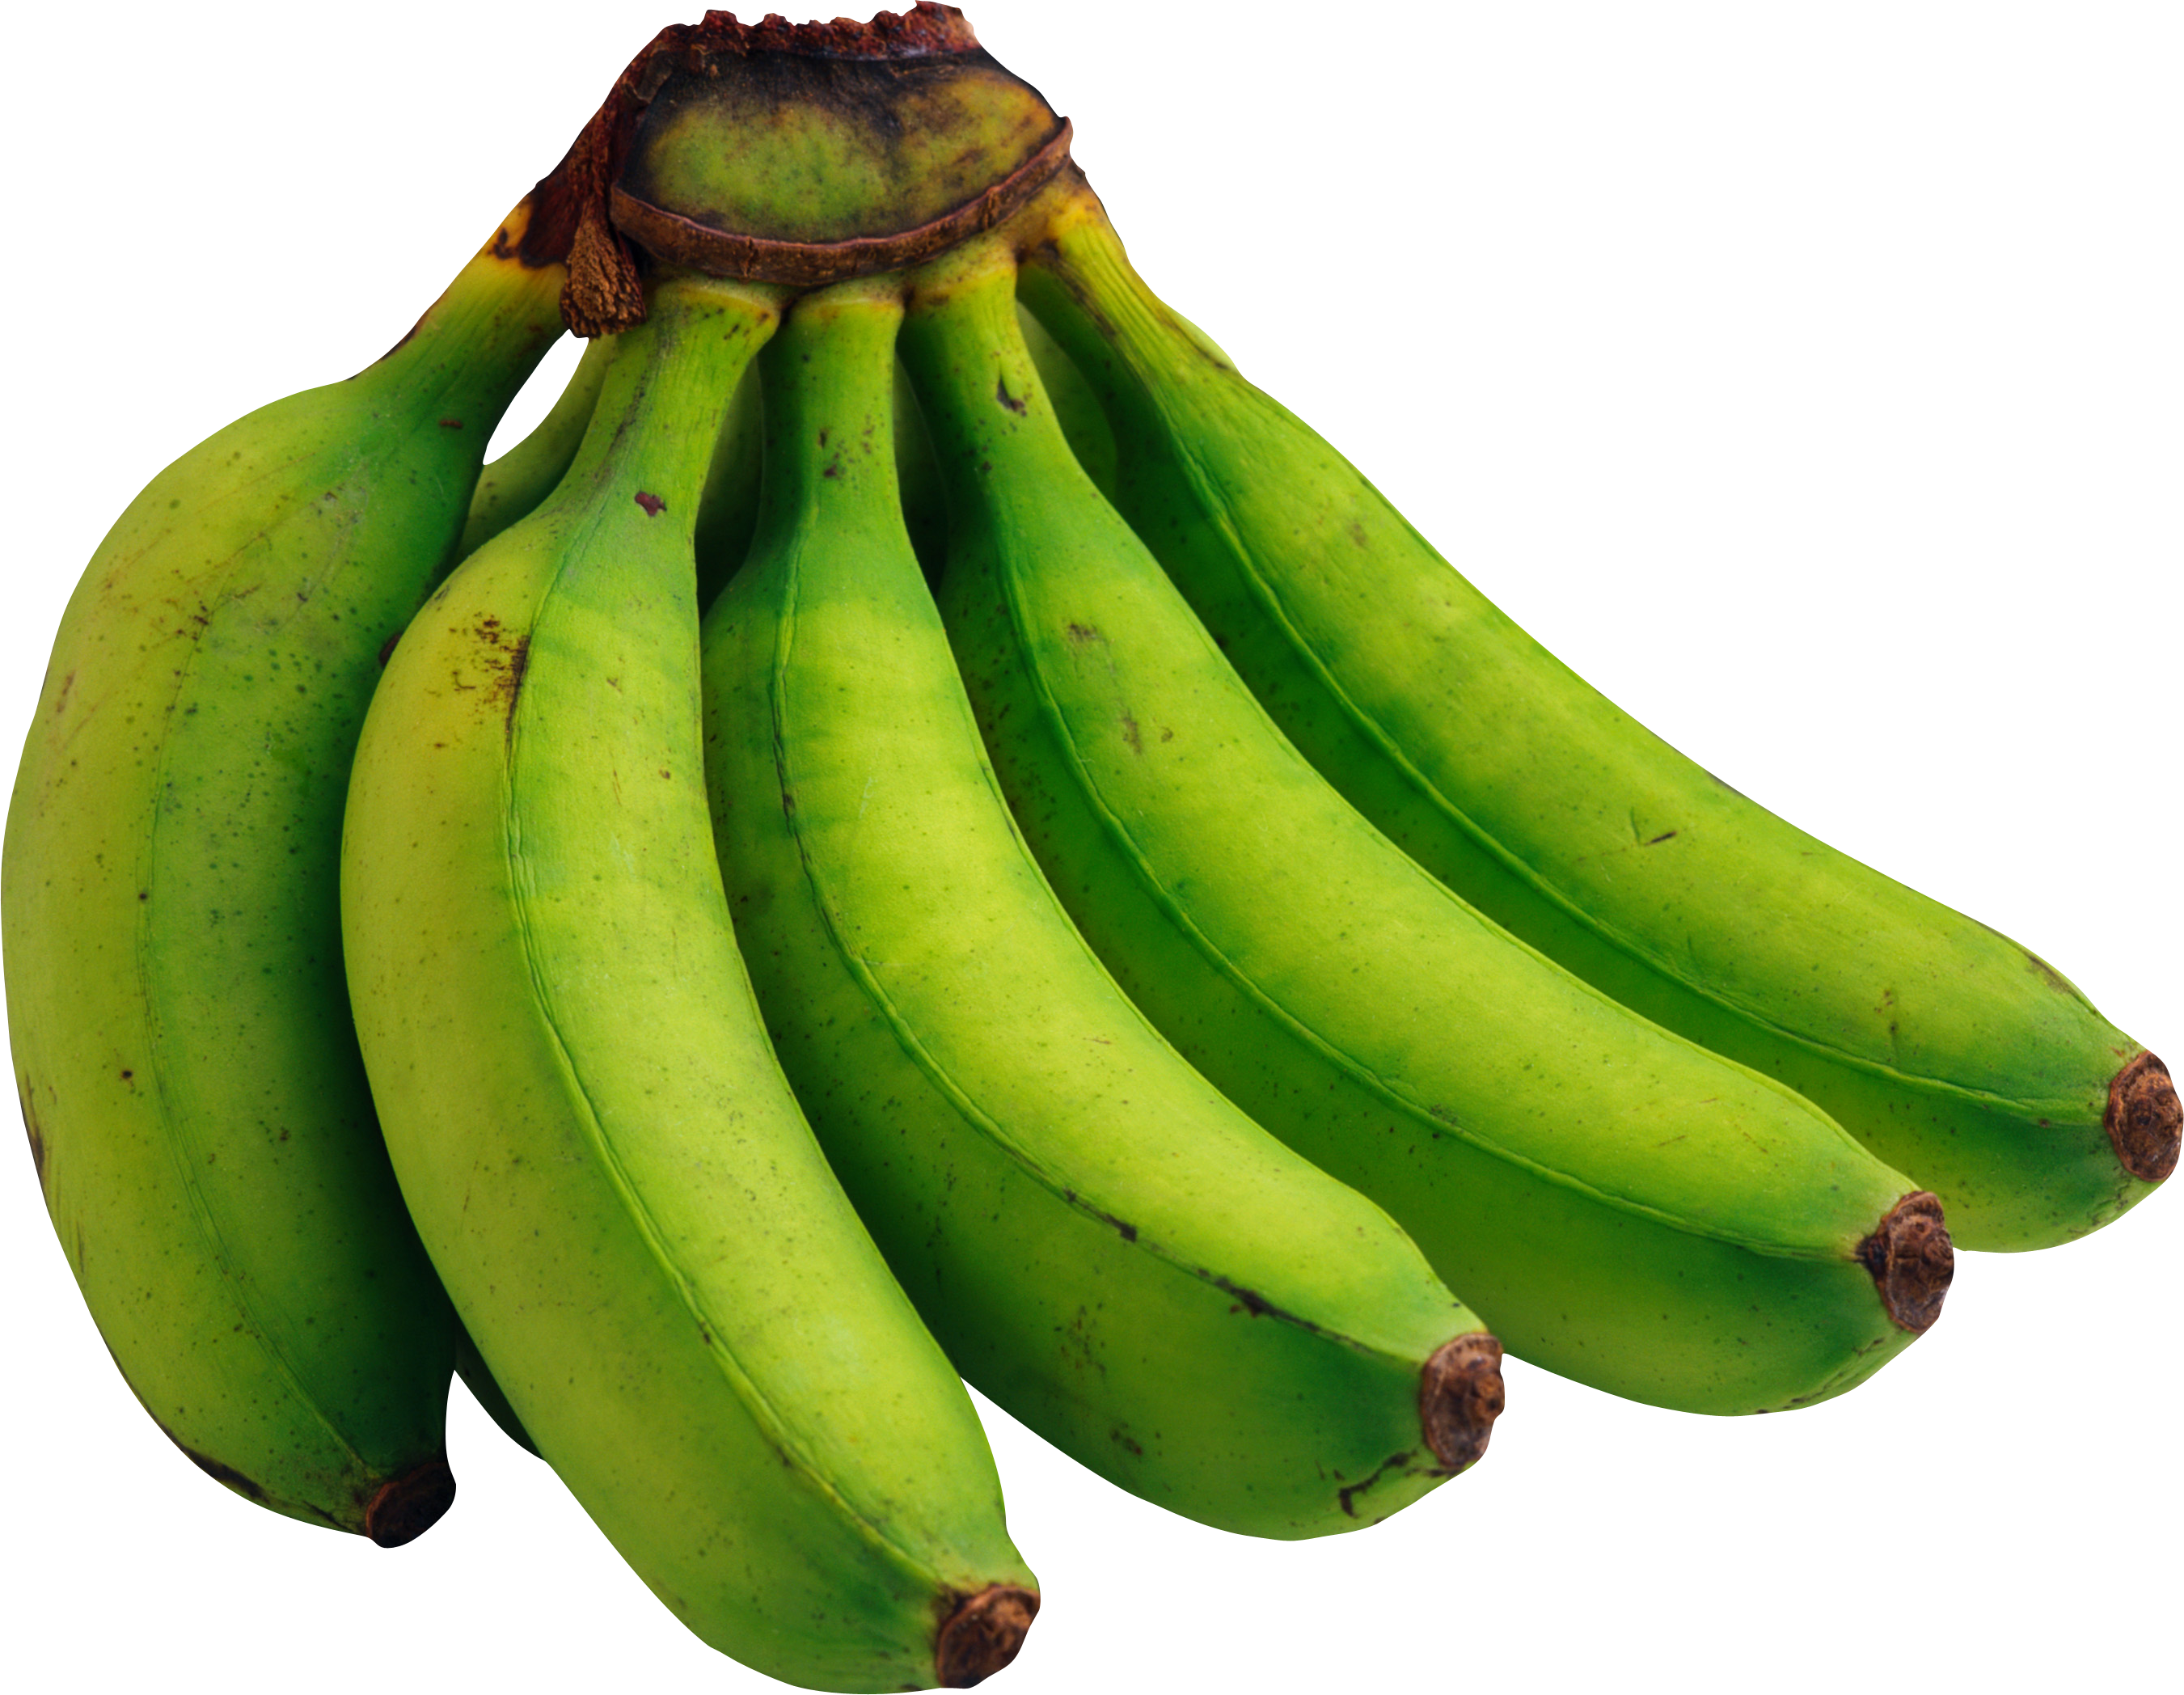 กล้วยเขียว ฟรีรูป